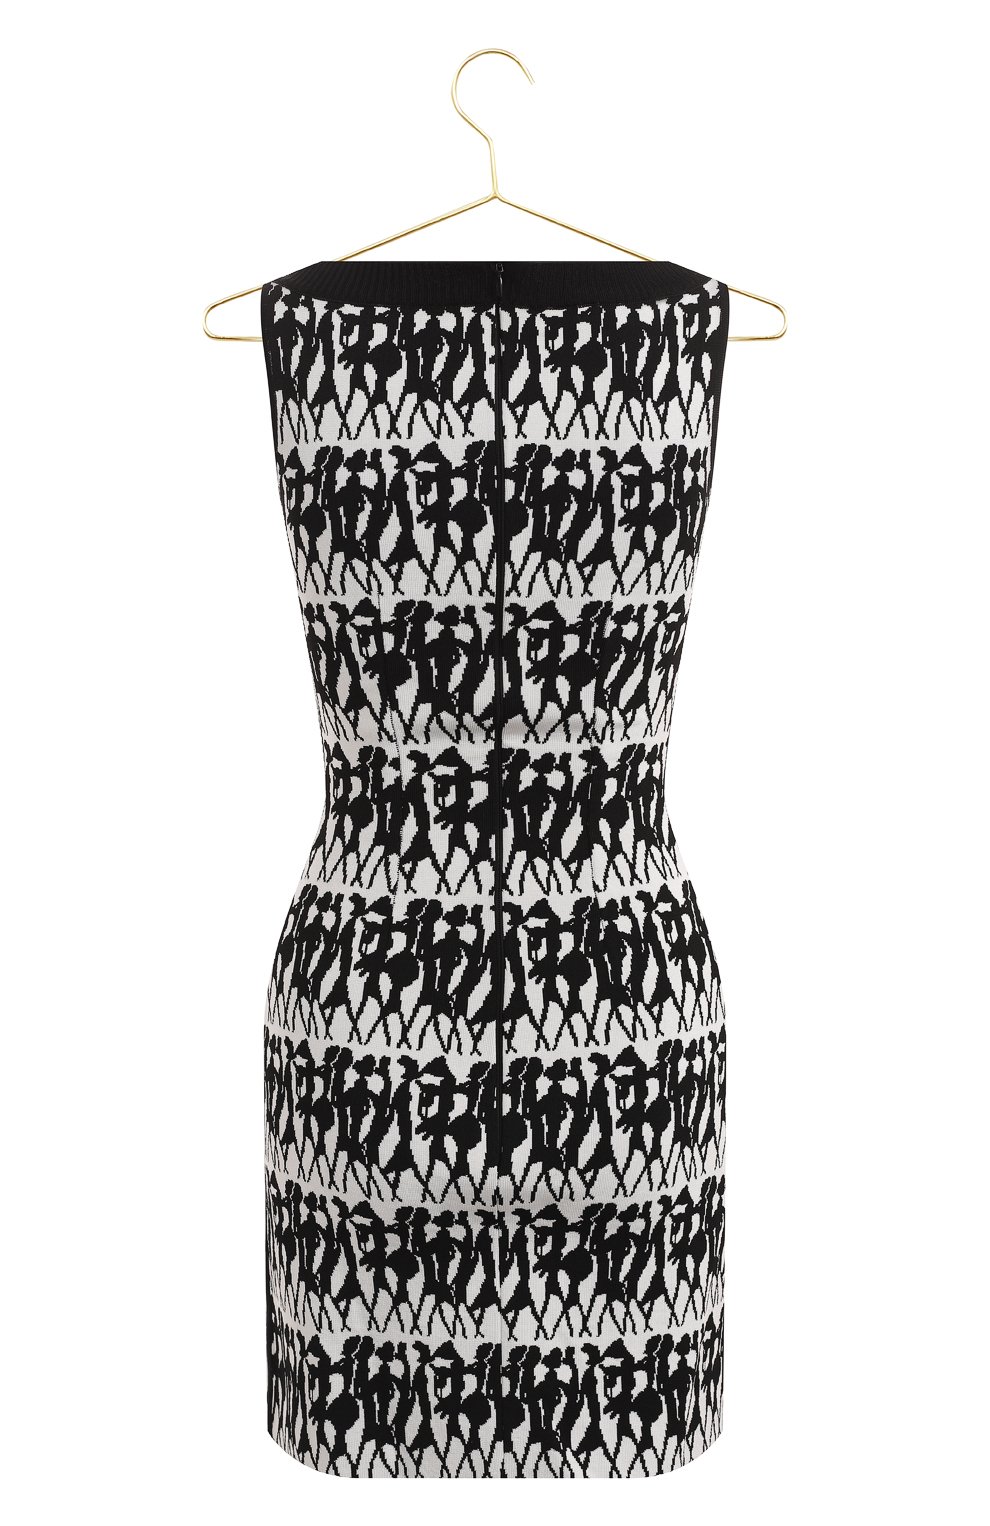 Платье из вискозы | Herve L.Leroux | Чёрно-белый - 2